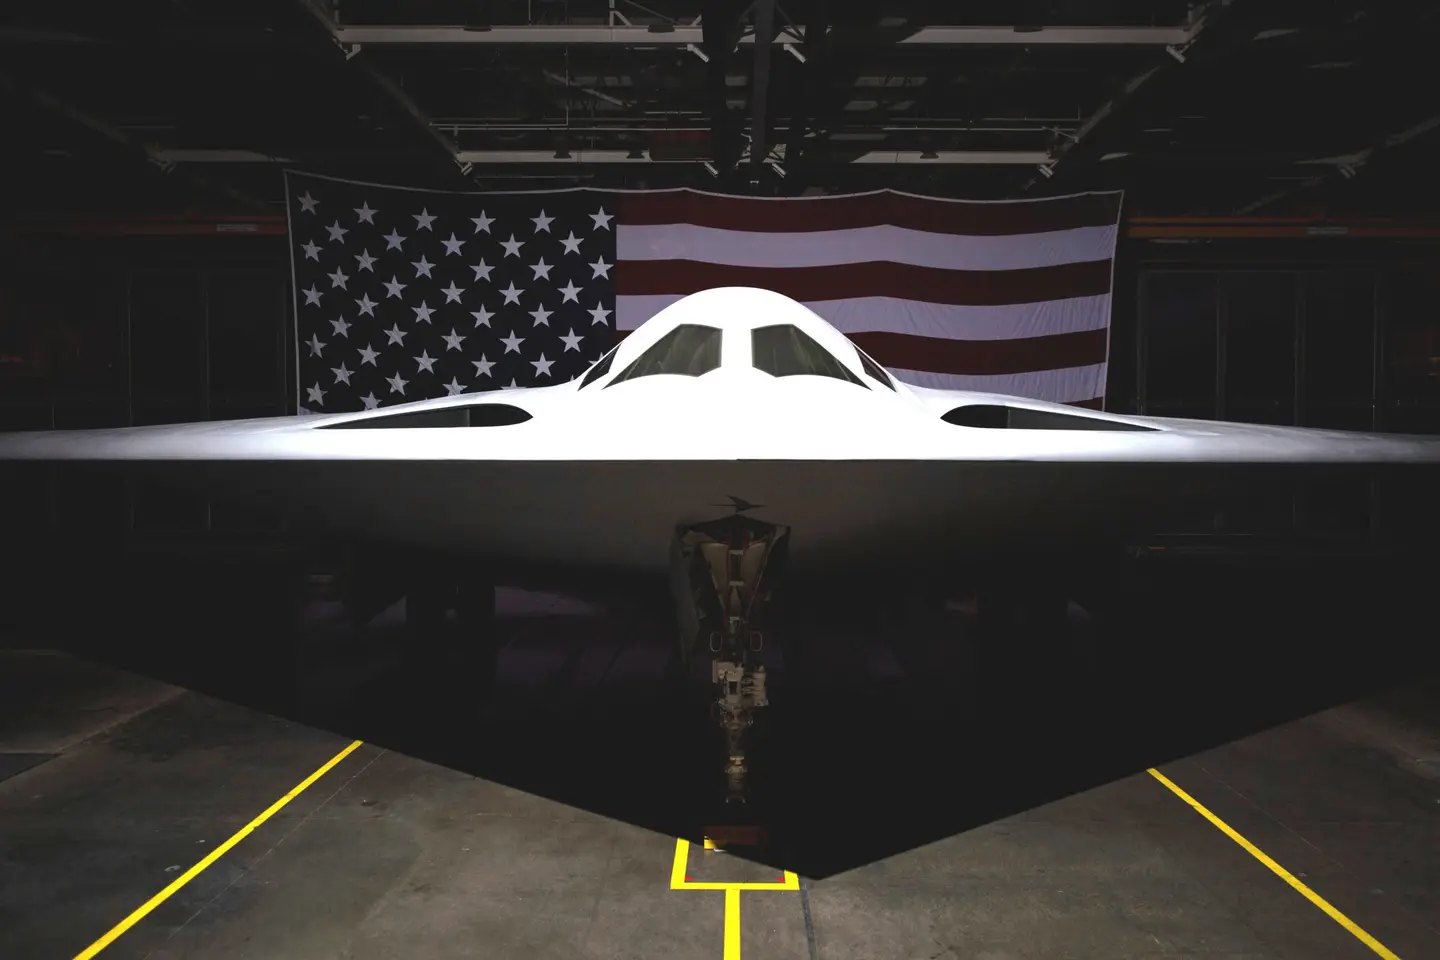 Northrop Grumman представила ядерный бомбардировщик нового поколения B-21 Raider, которому нестрашны самые передовые системы ПВО